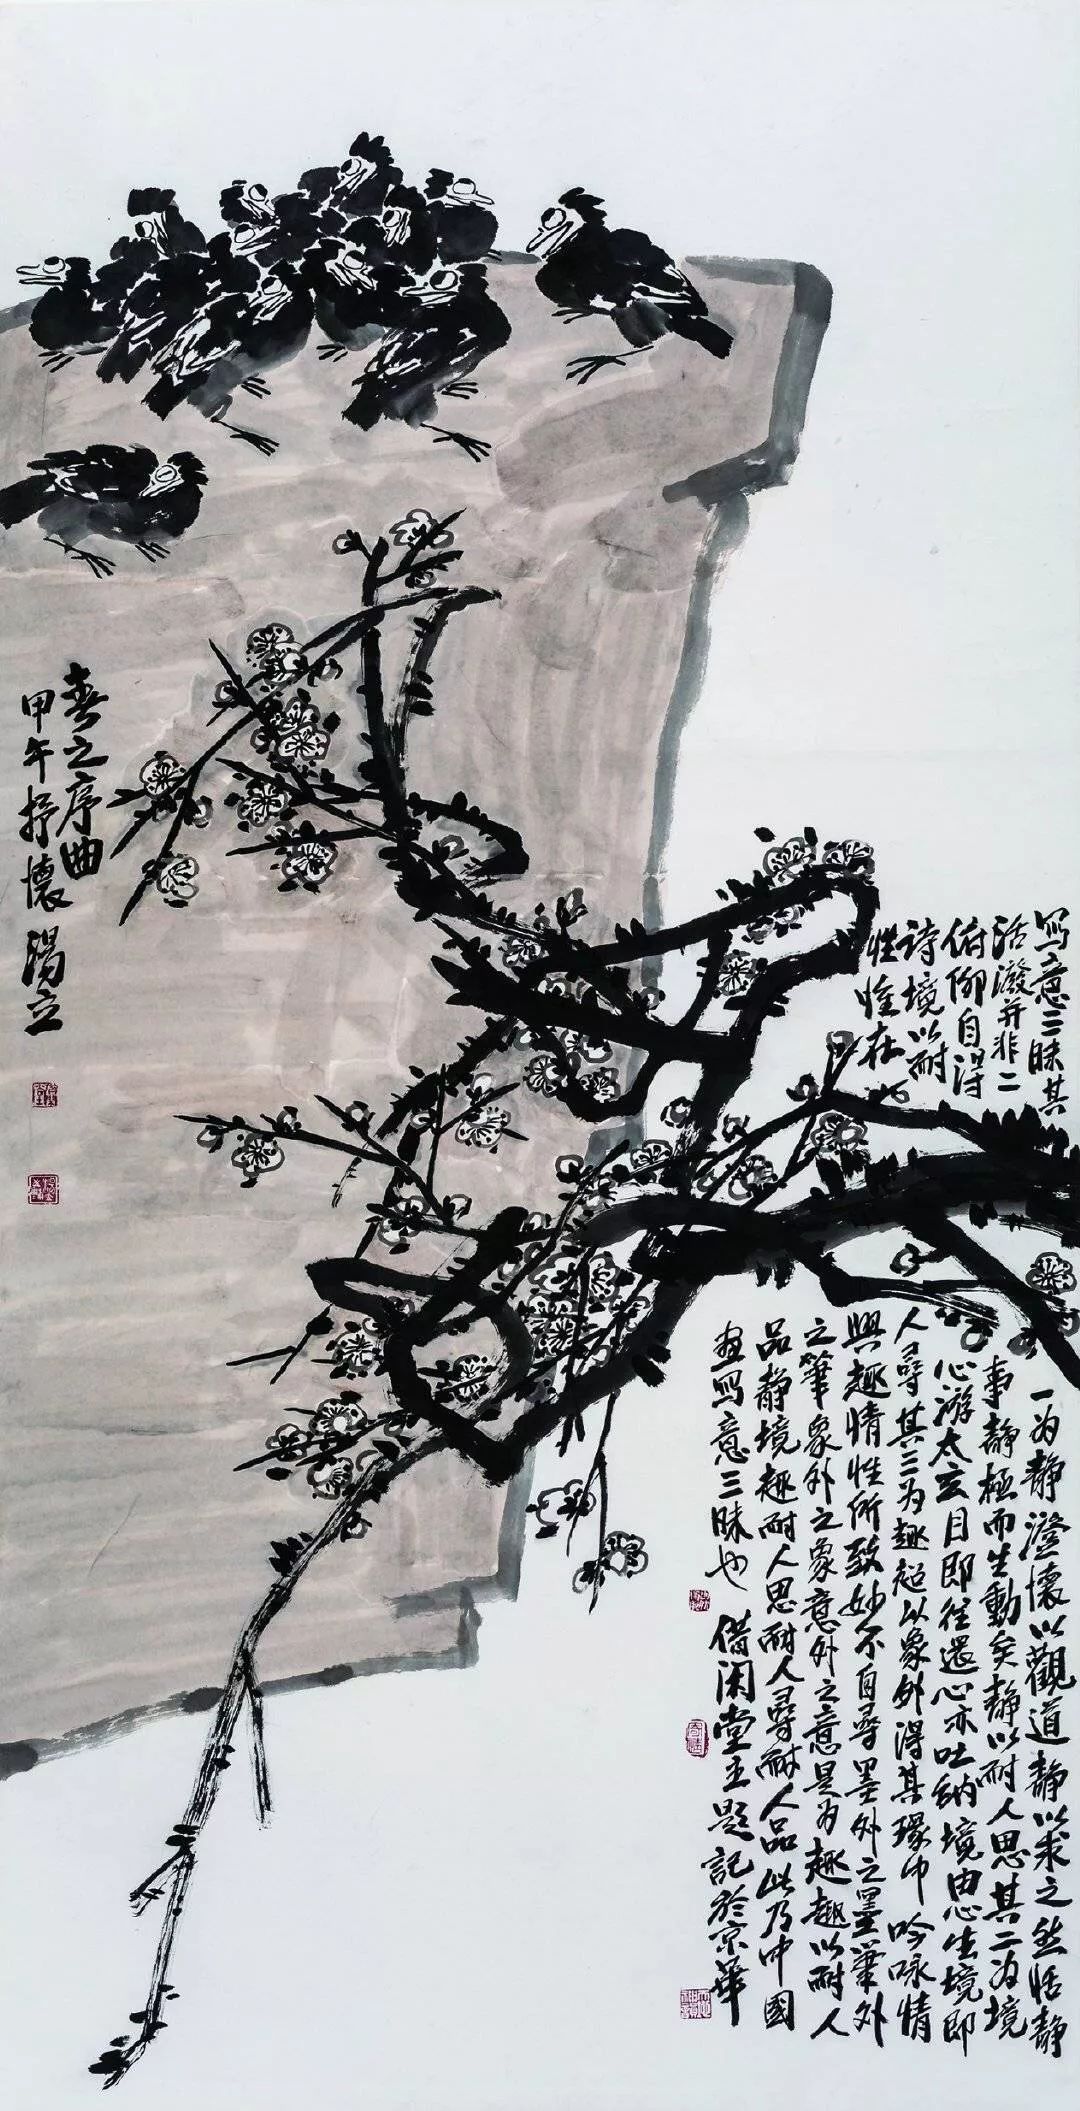 中国画花鸟大师汤立，他的作品潇洒旷逸